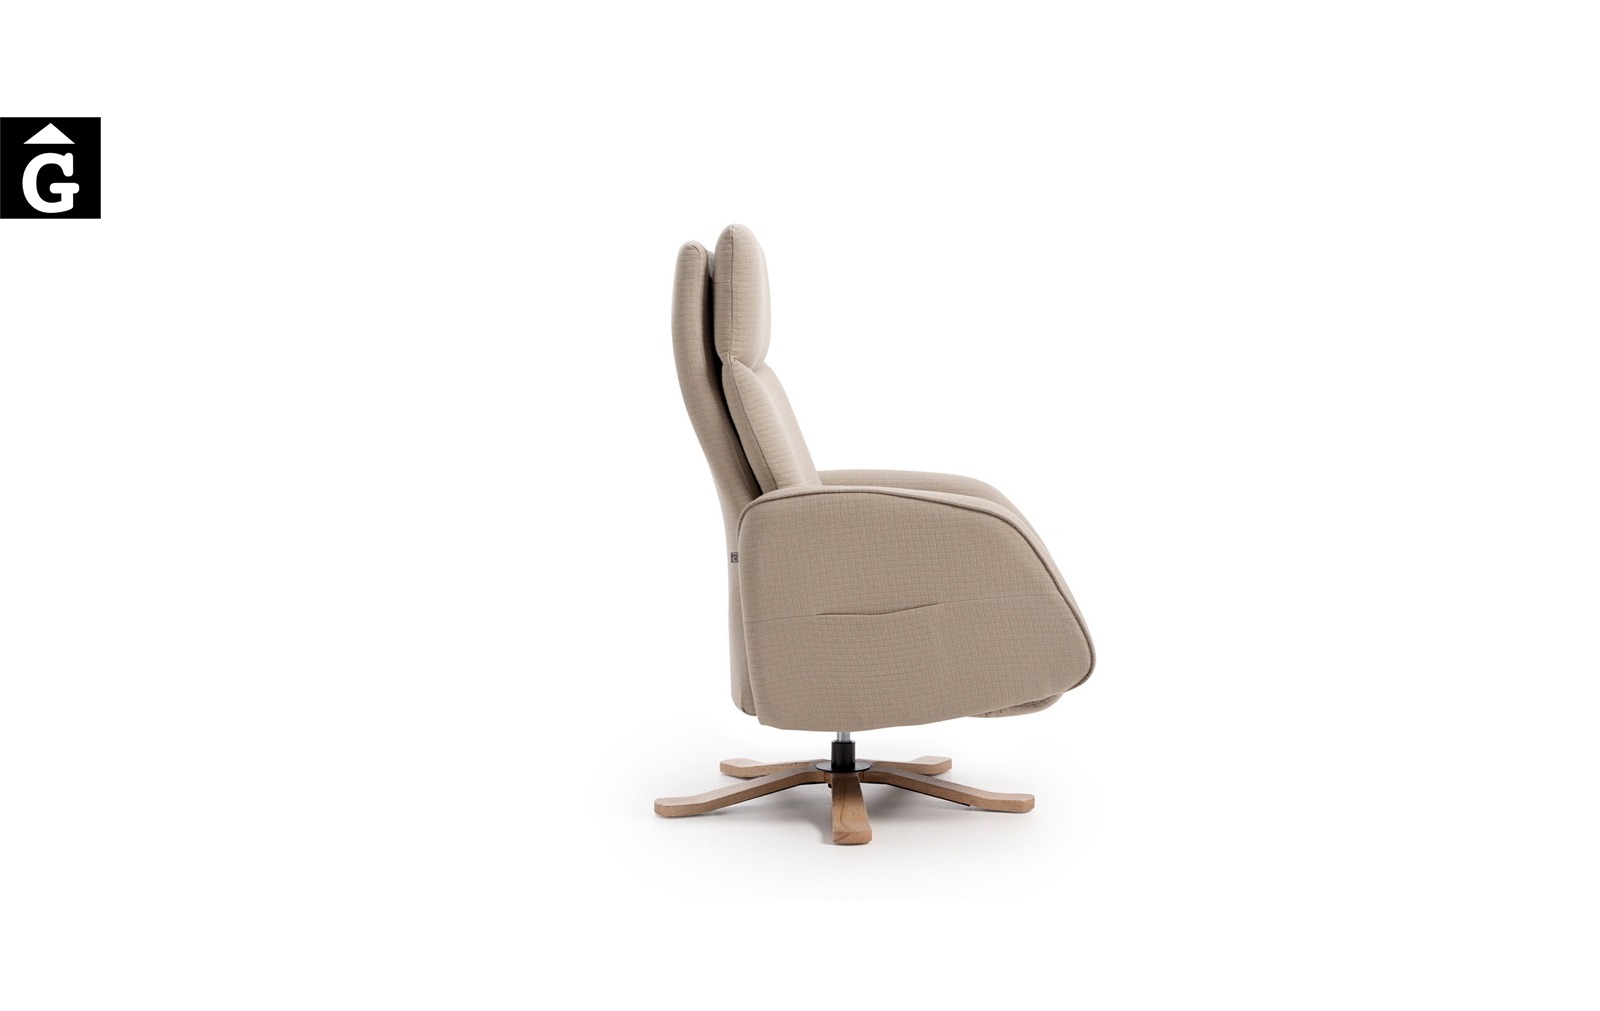 Butaca relax Panda | Vista perfil | Reyes Ordoñez Sofas disseny i qualitat alta distribuïdor oficial mobles Gifreu